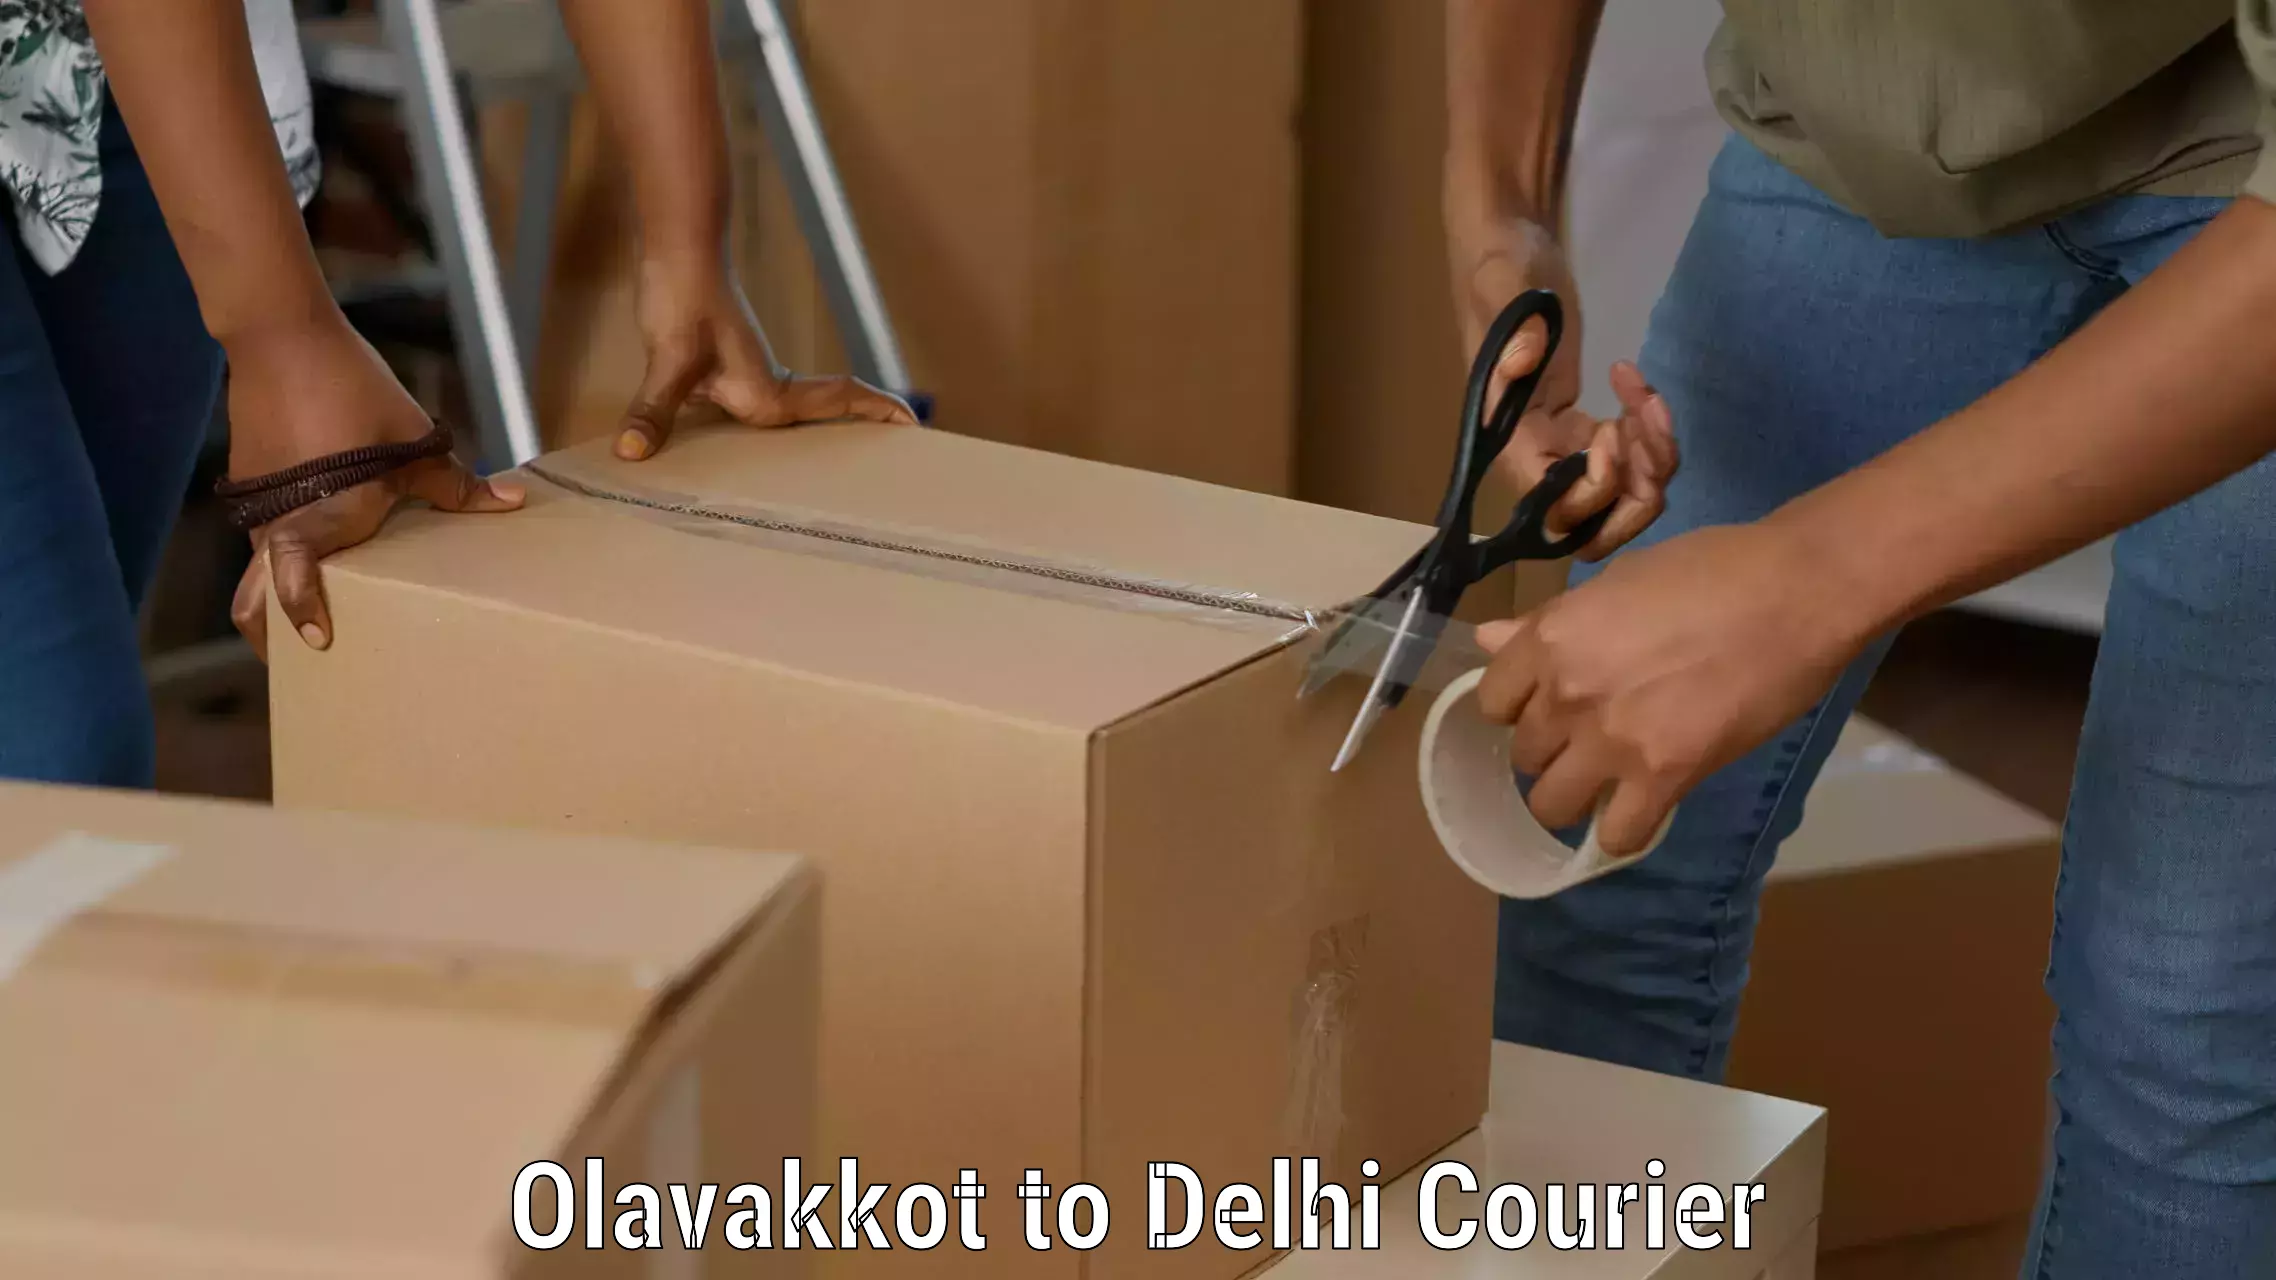 Next-day freight services Olavakkot to NIT Delhi